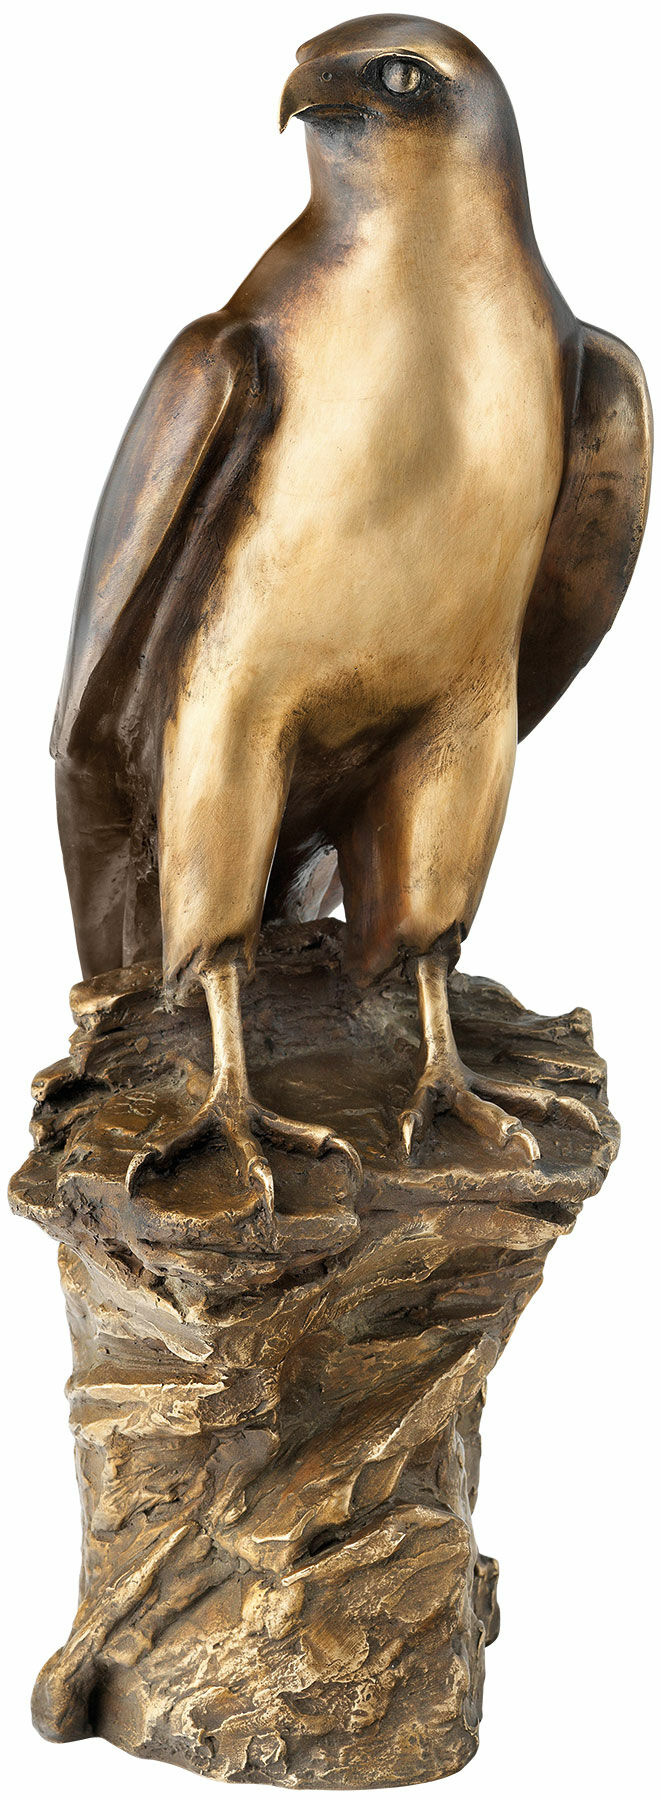 Sculpture "Kestrel", bronze by Erwin A. Schinzel